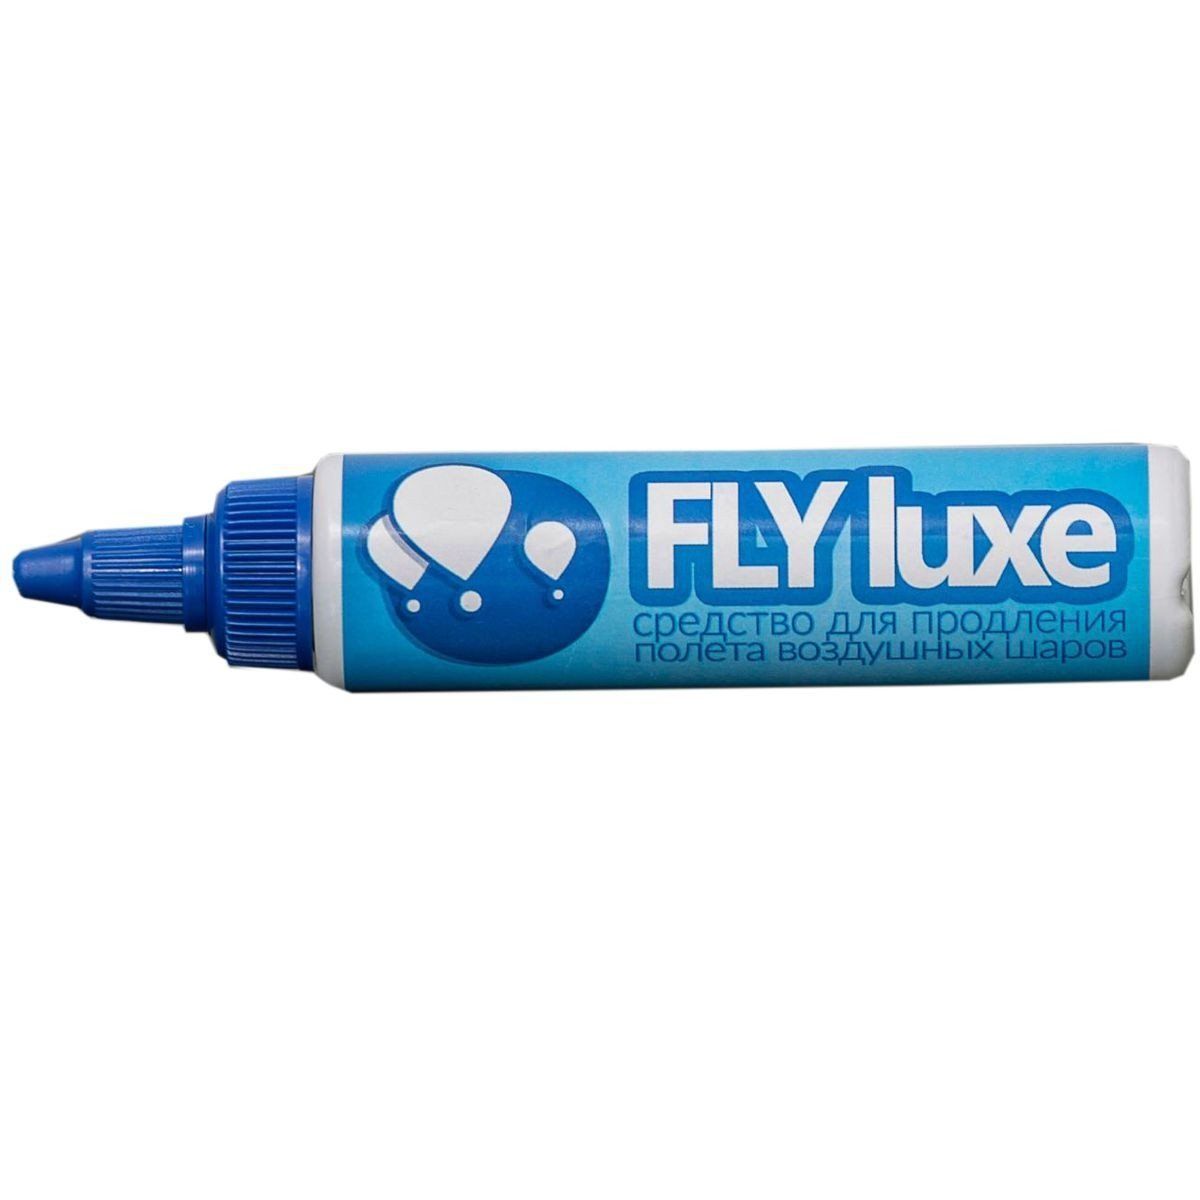 1302-0804 Средство д/обработки шаров FlyLuxe 0,07л